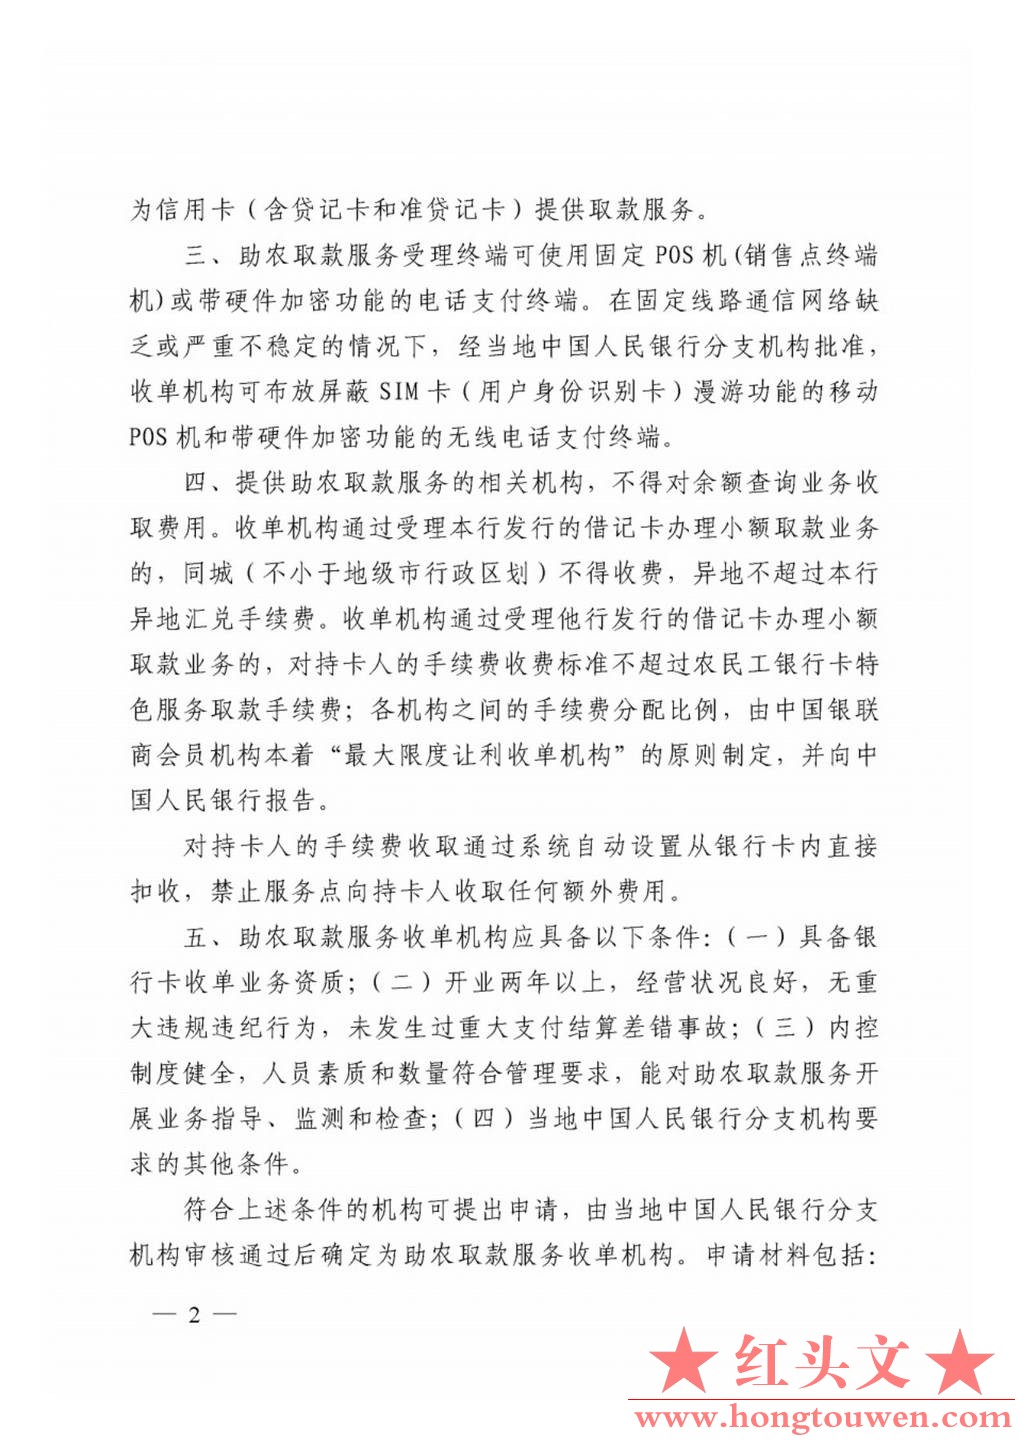 银发[2011]177号-中国人民银行关于推广银行卡助农取款服务的通知_Page2.jpg.jpg